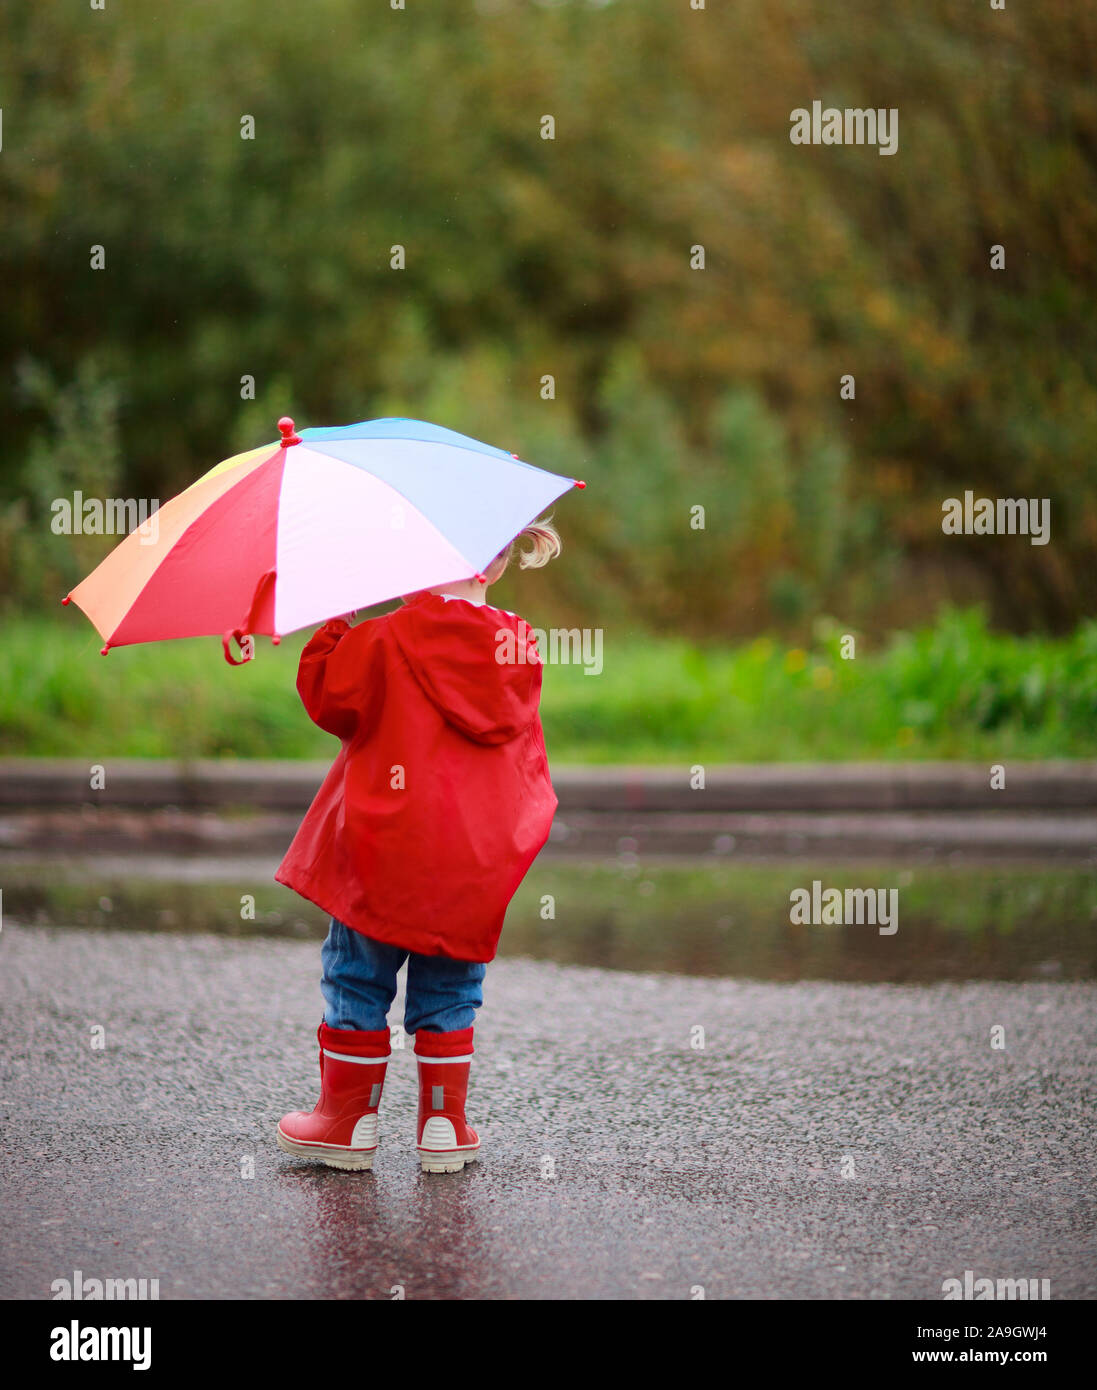 Finnland, kleines Maedchen mit Regenschirm im Regen Stock Photo - Alamy